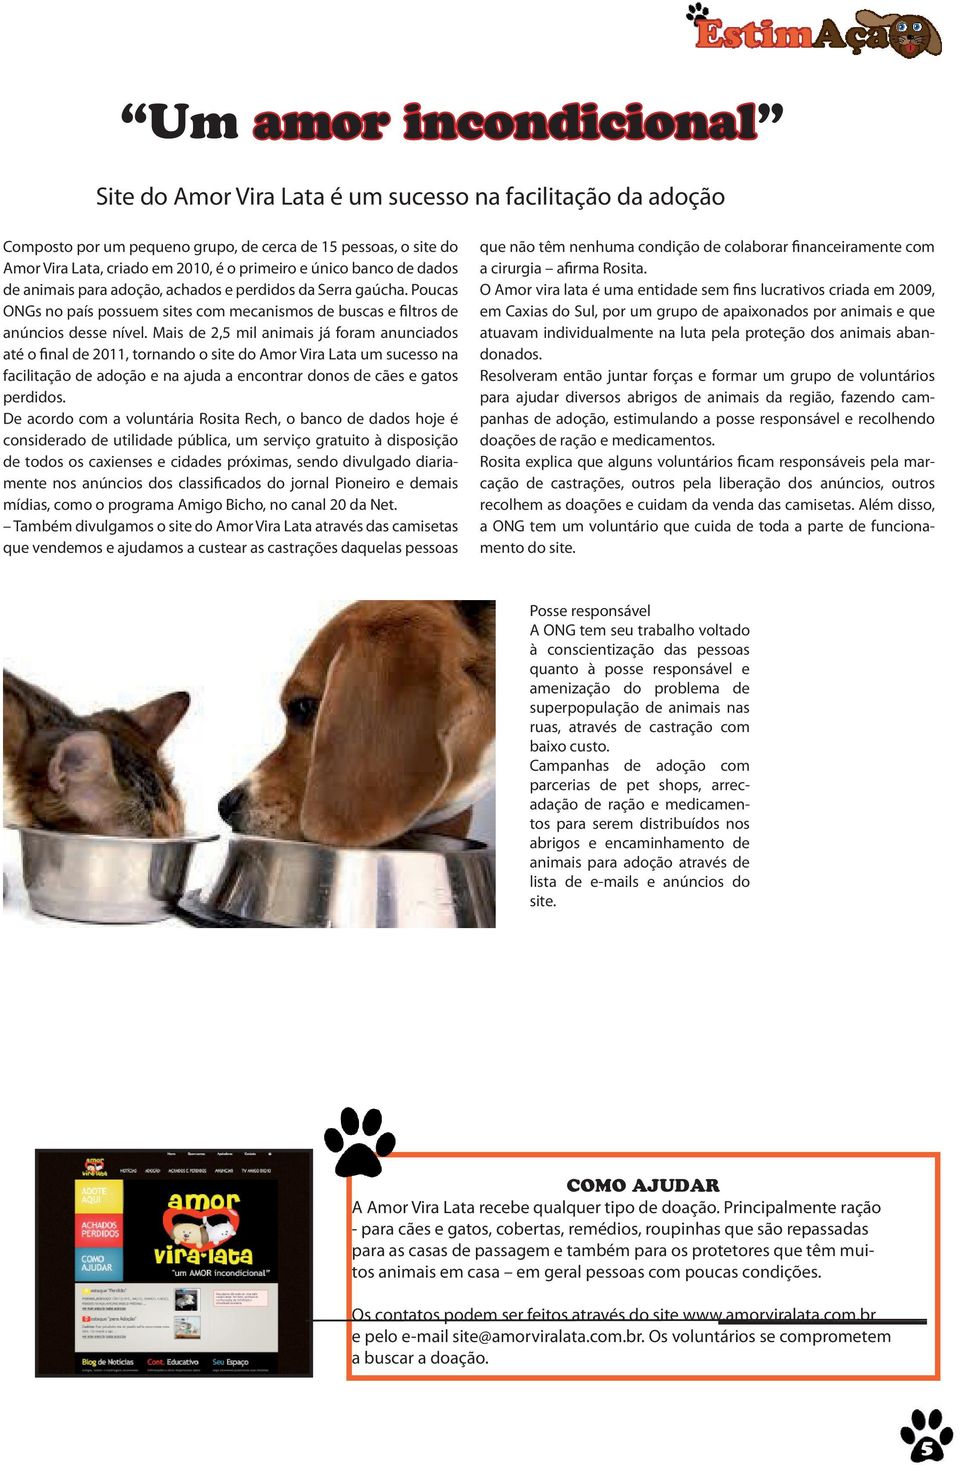 Mais de 2,5 mil animais já foram anunciados até o final de 2011, tornando o site do Amor Vira Lata um sucesso na facilitação de adoção e na ajuda a encontrar donos de cães e gatos perdidos.